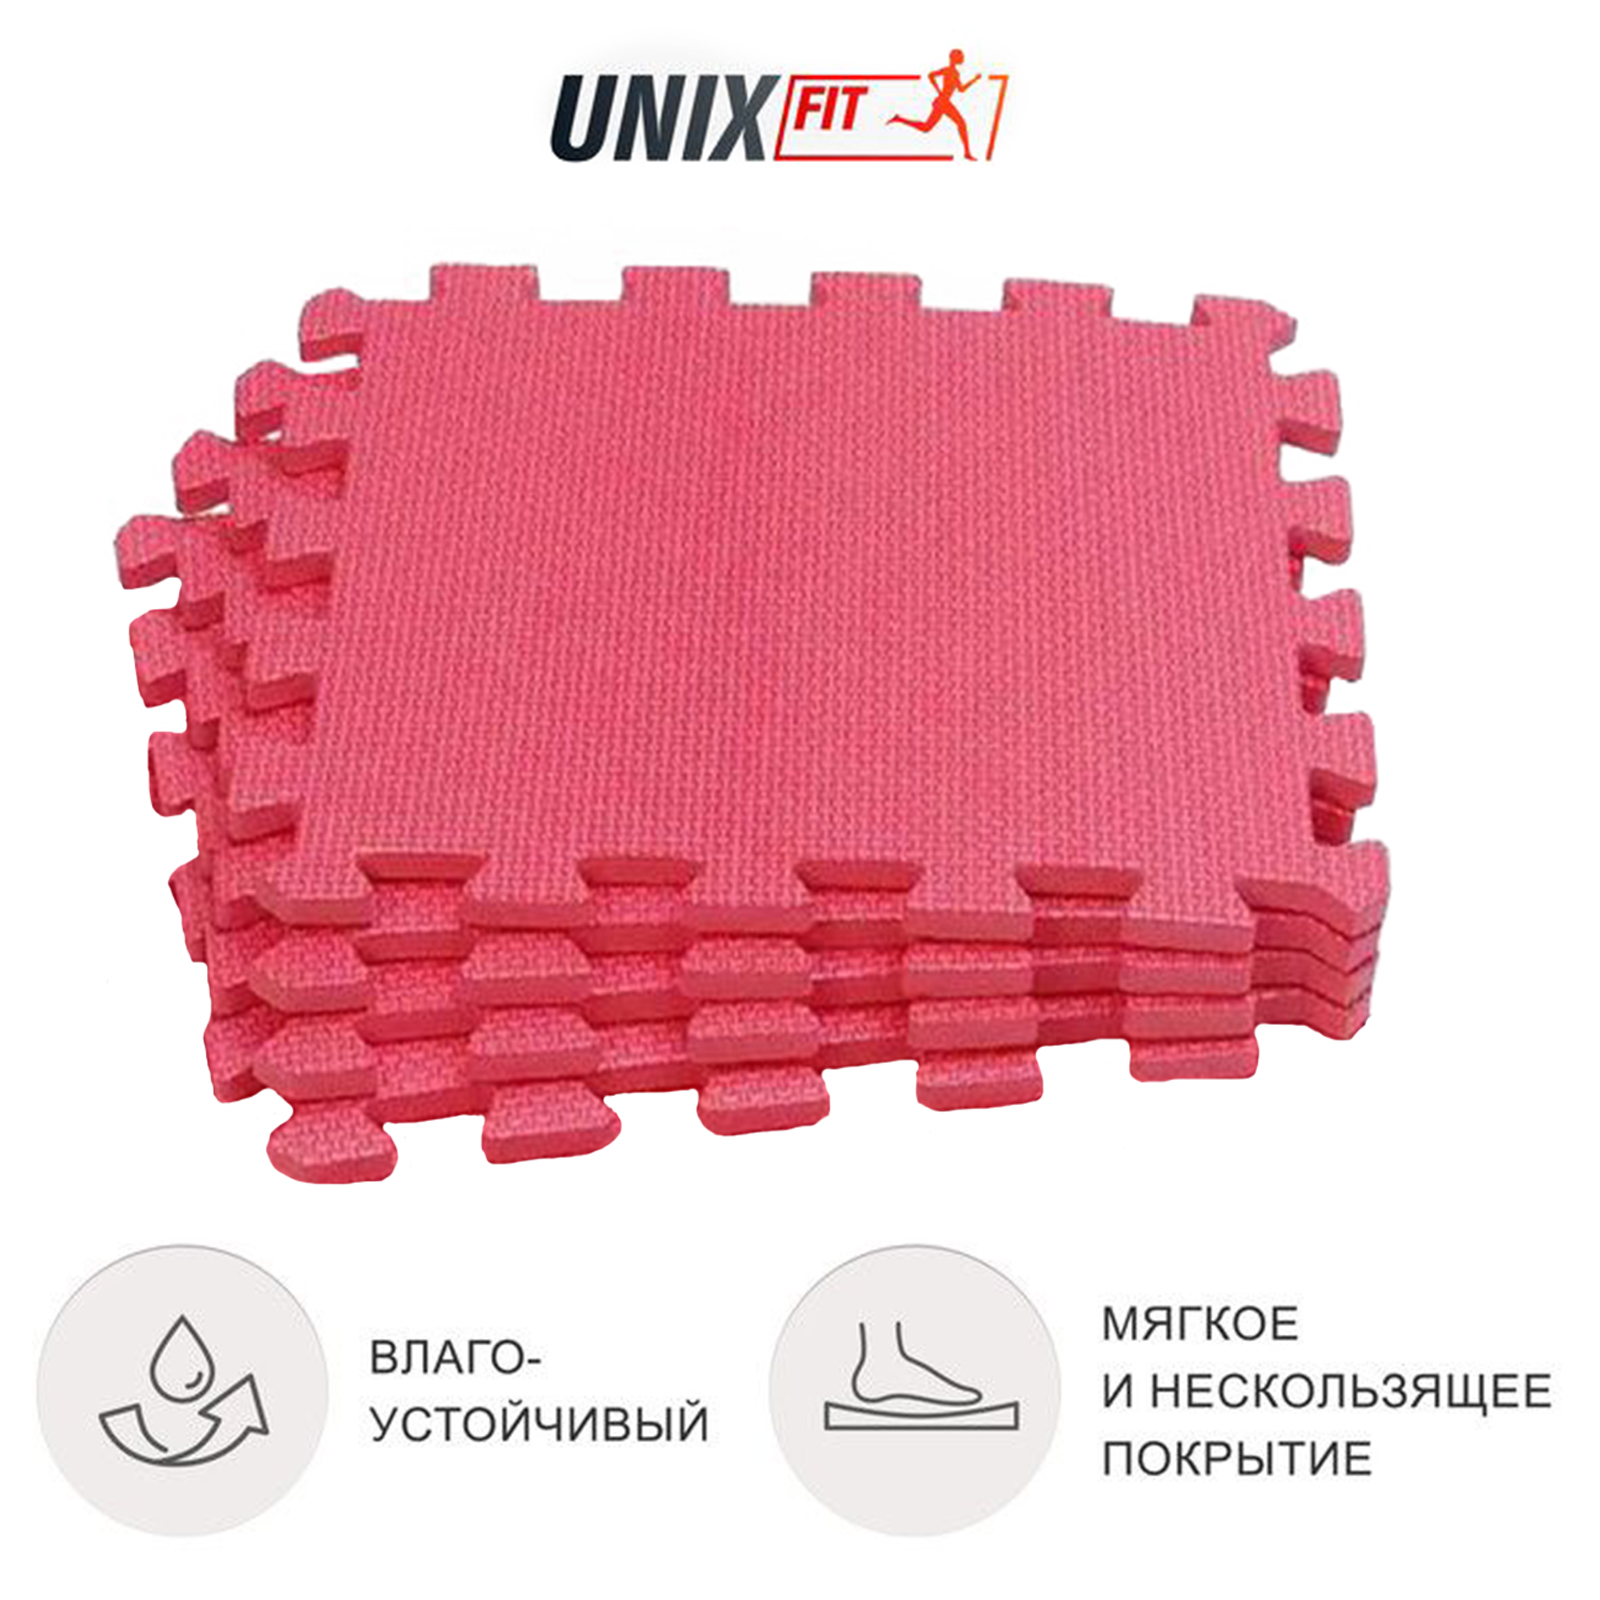 Коврик-пазл UNIX Fit влагостойкий для йоги и фитнеса, 30 х 30 х 1 см, красный, 4 шт.